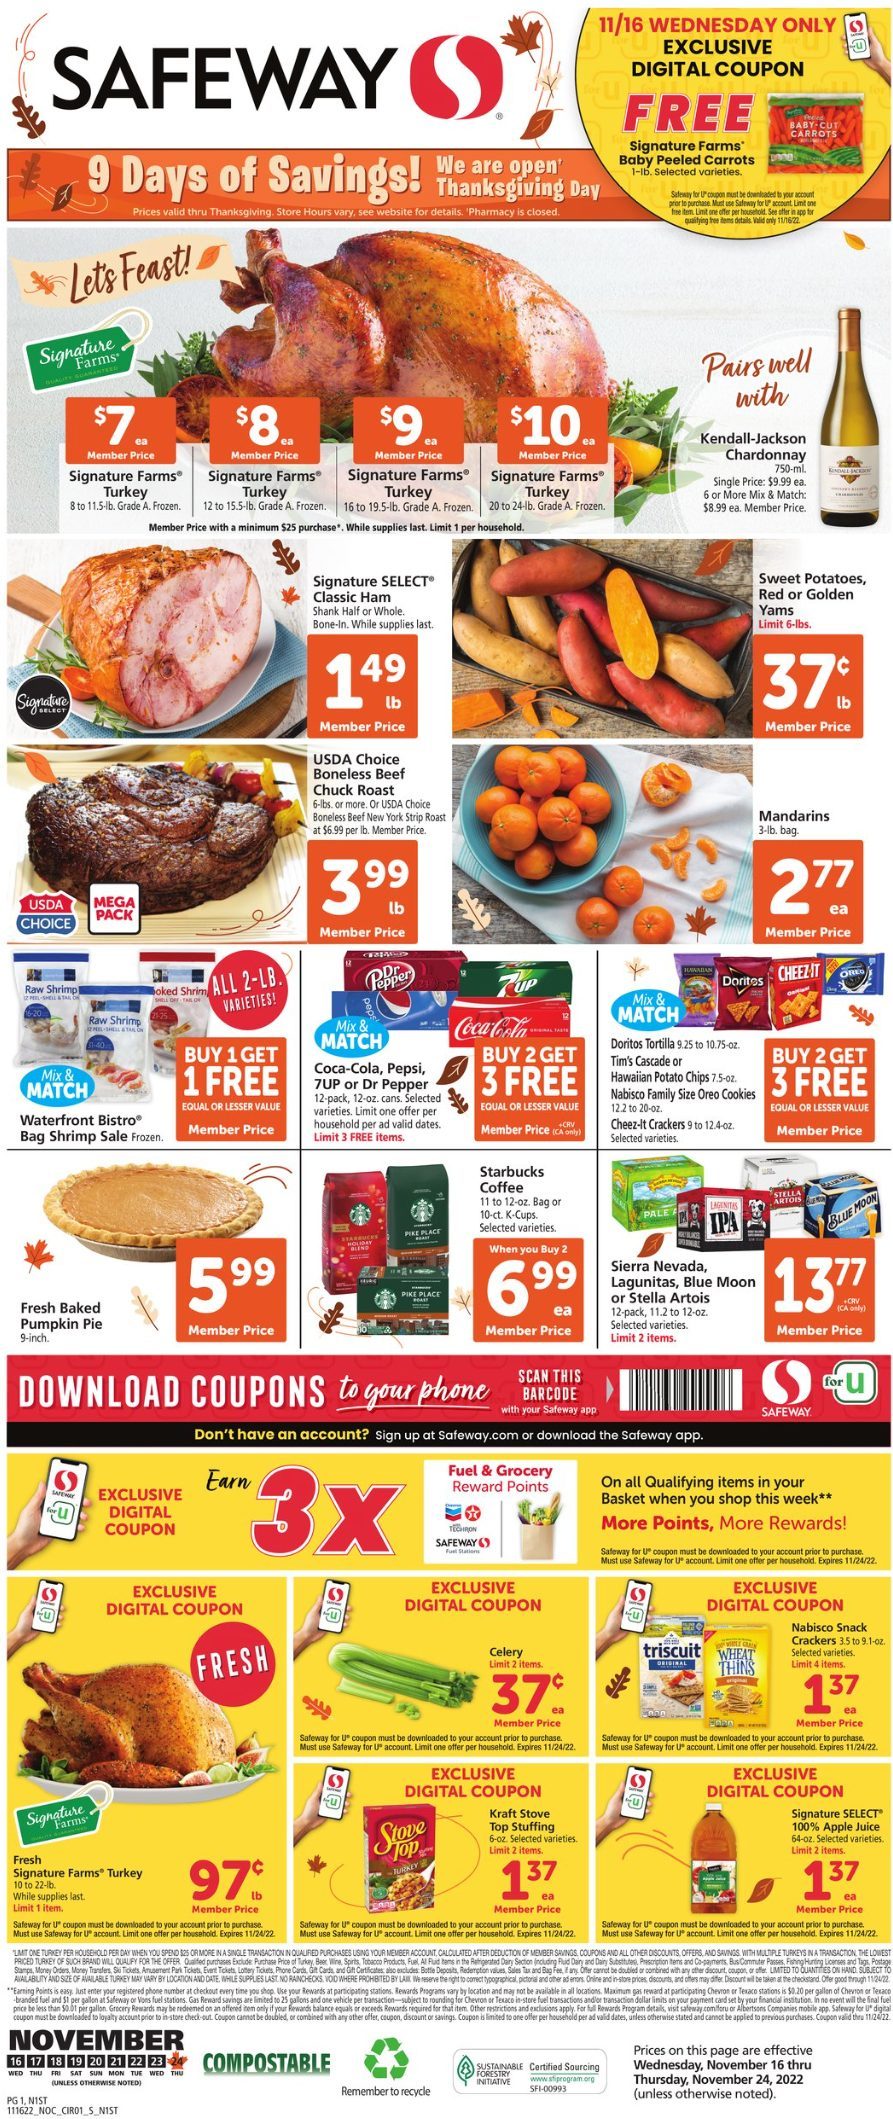 Safeway Weekly Ad Nov 16 22, 2022 WeeklyAds2